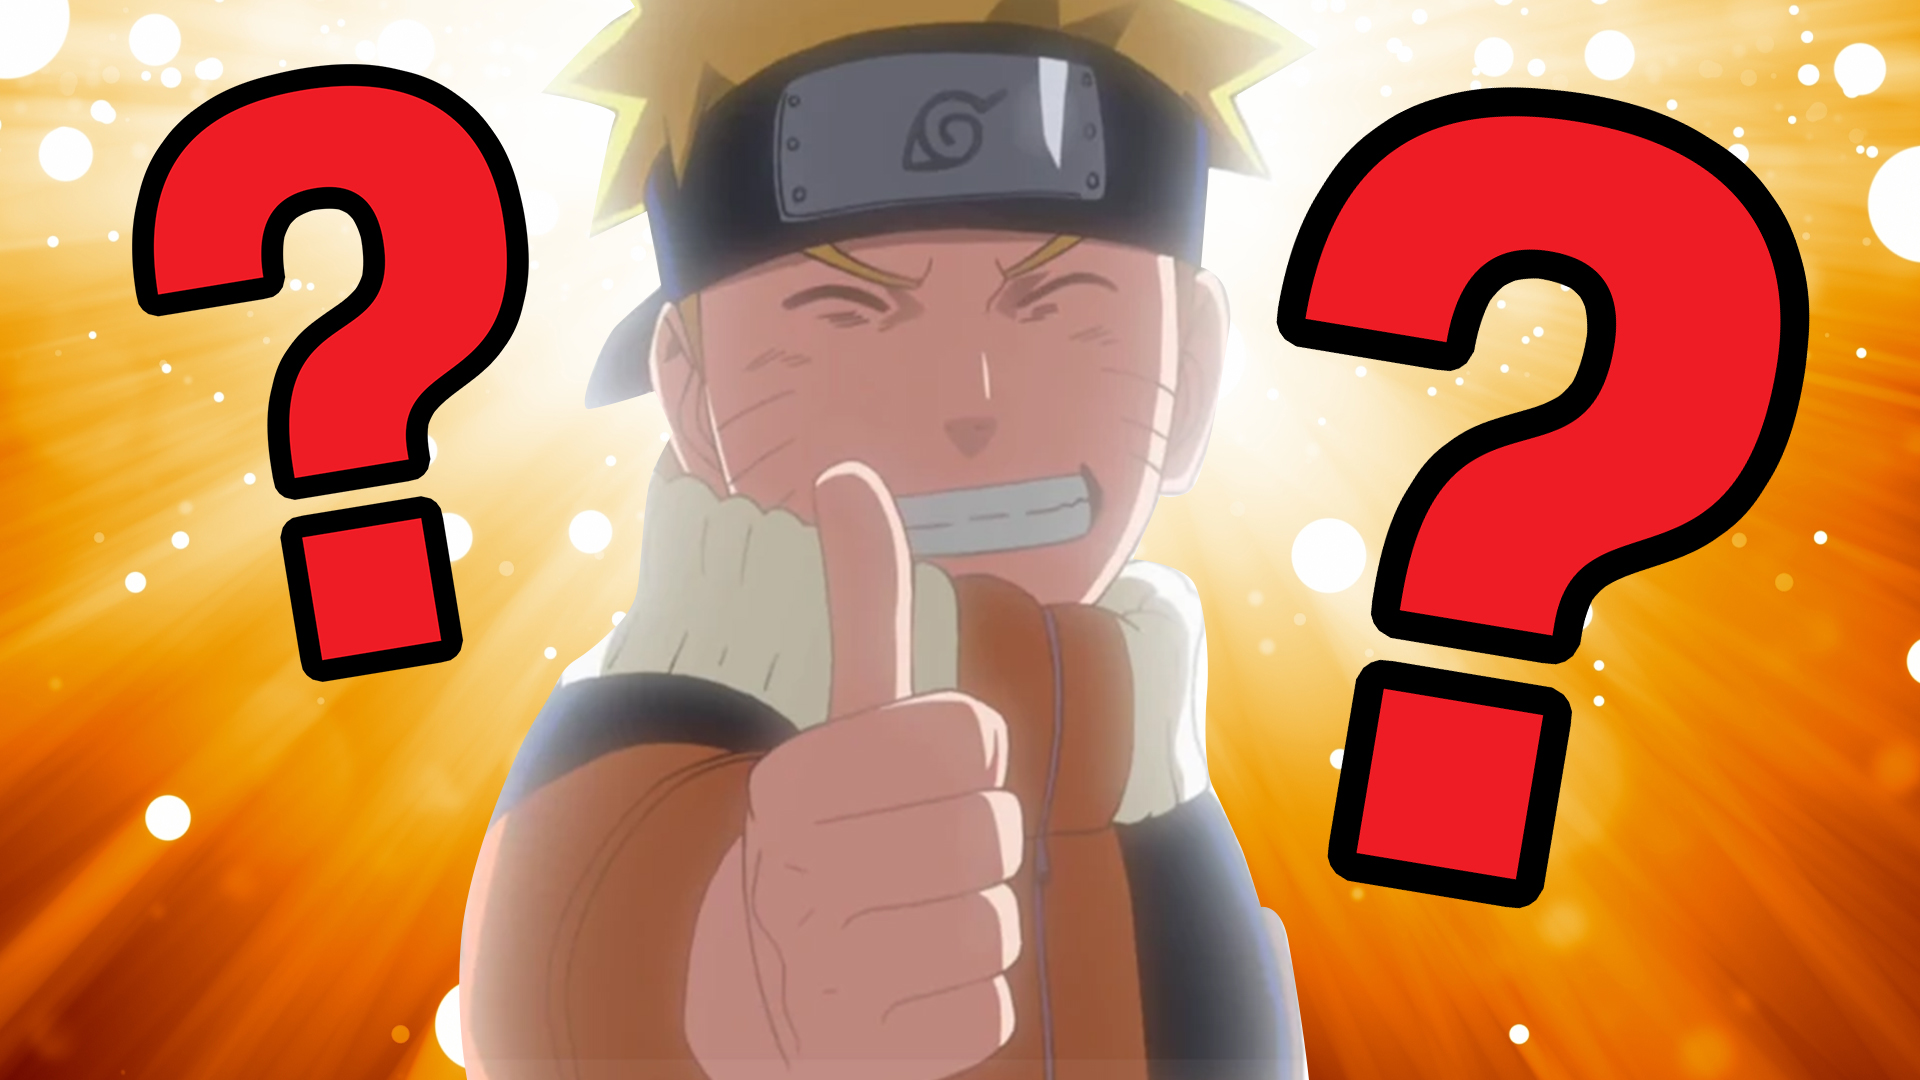 Naruto gives a thumbs up